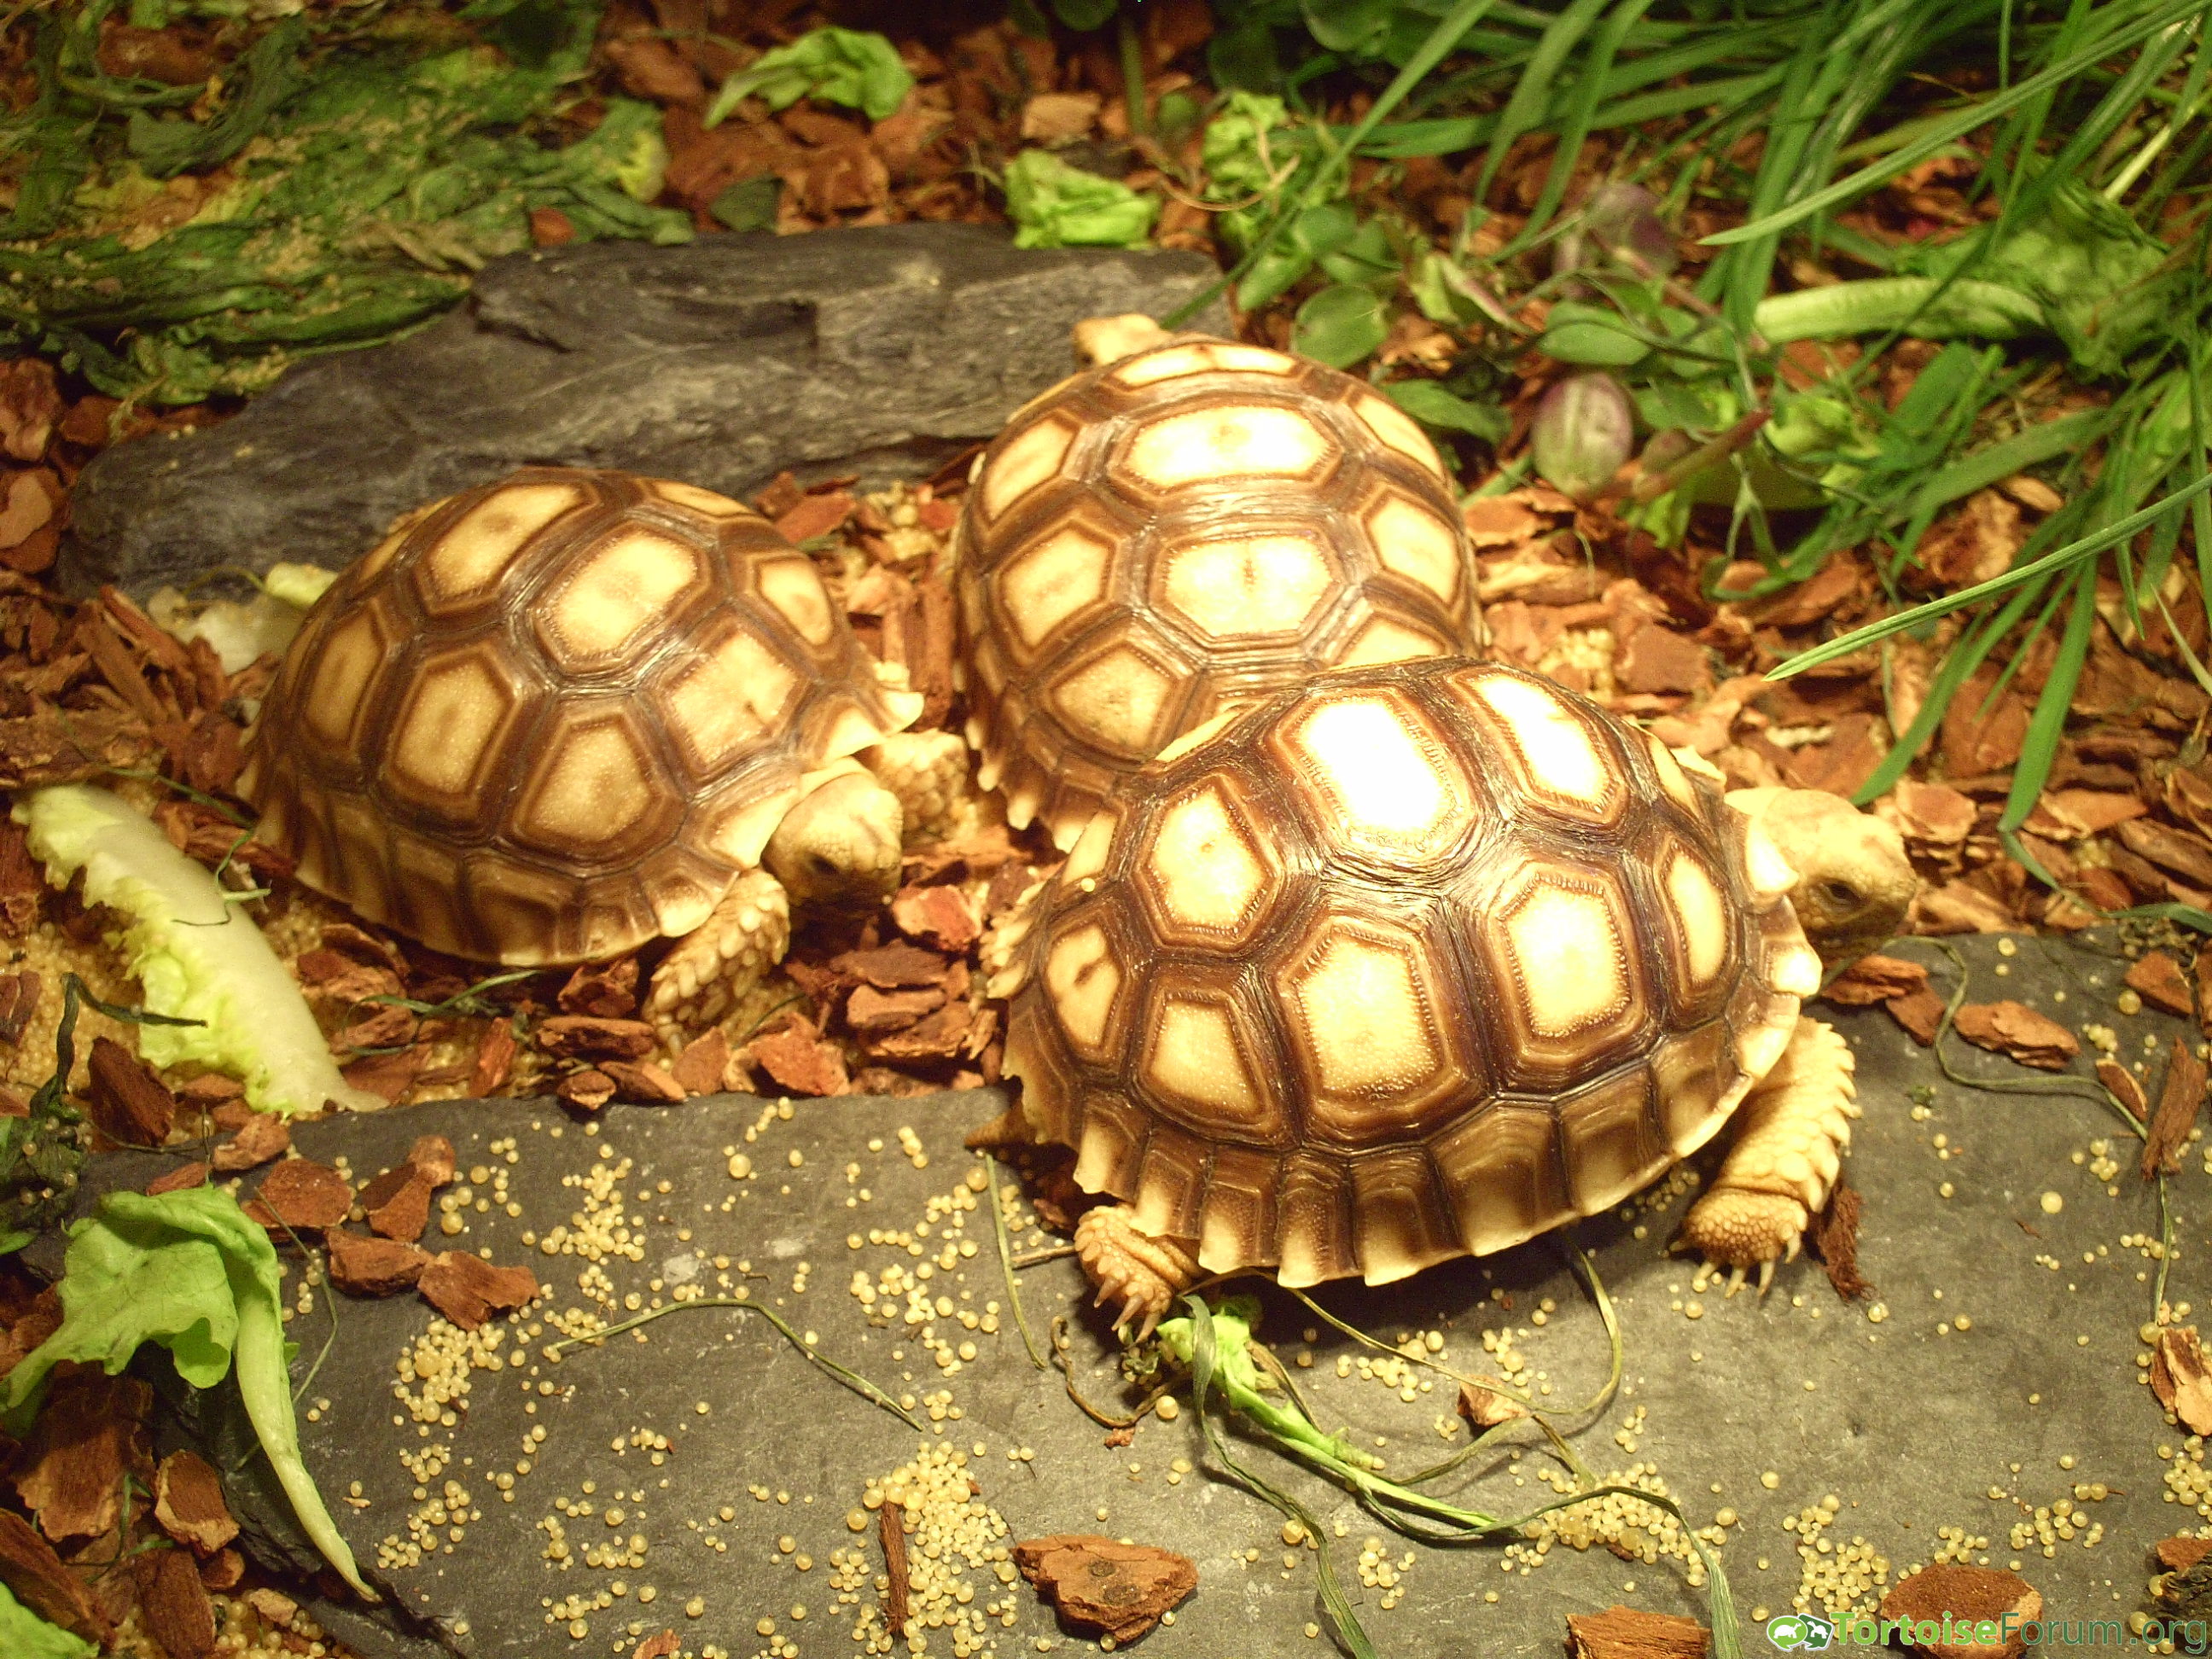 My sulcata tortoises from Juli 2016